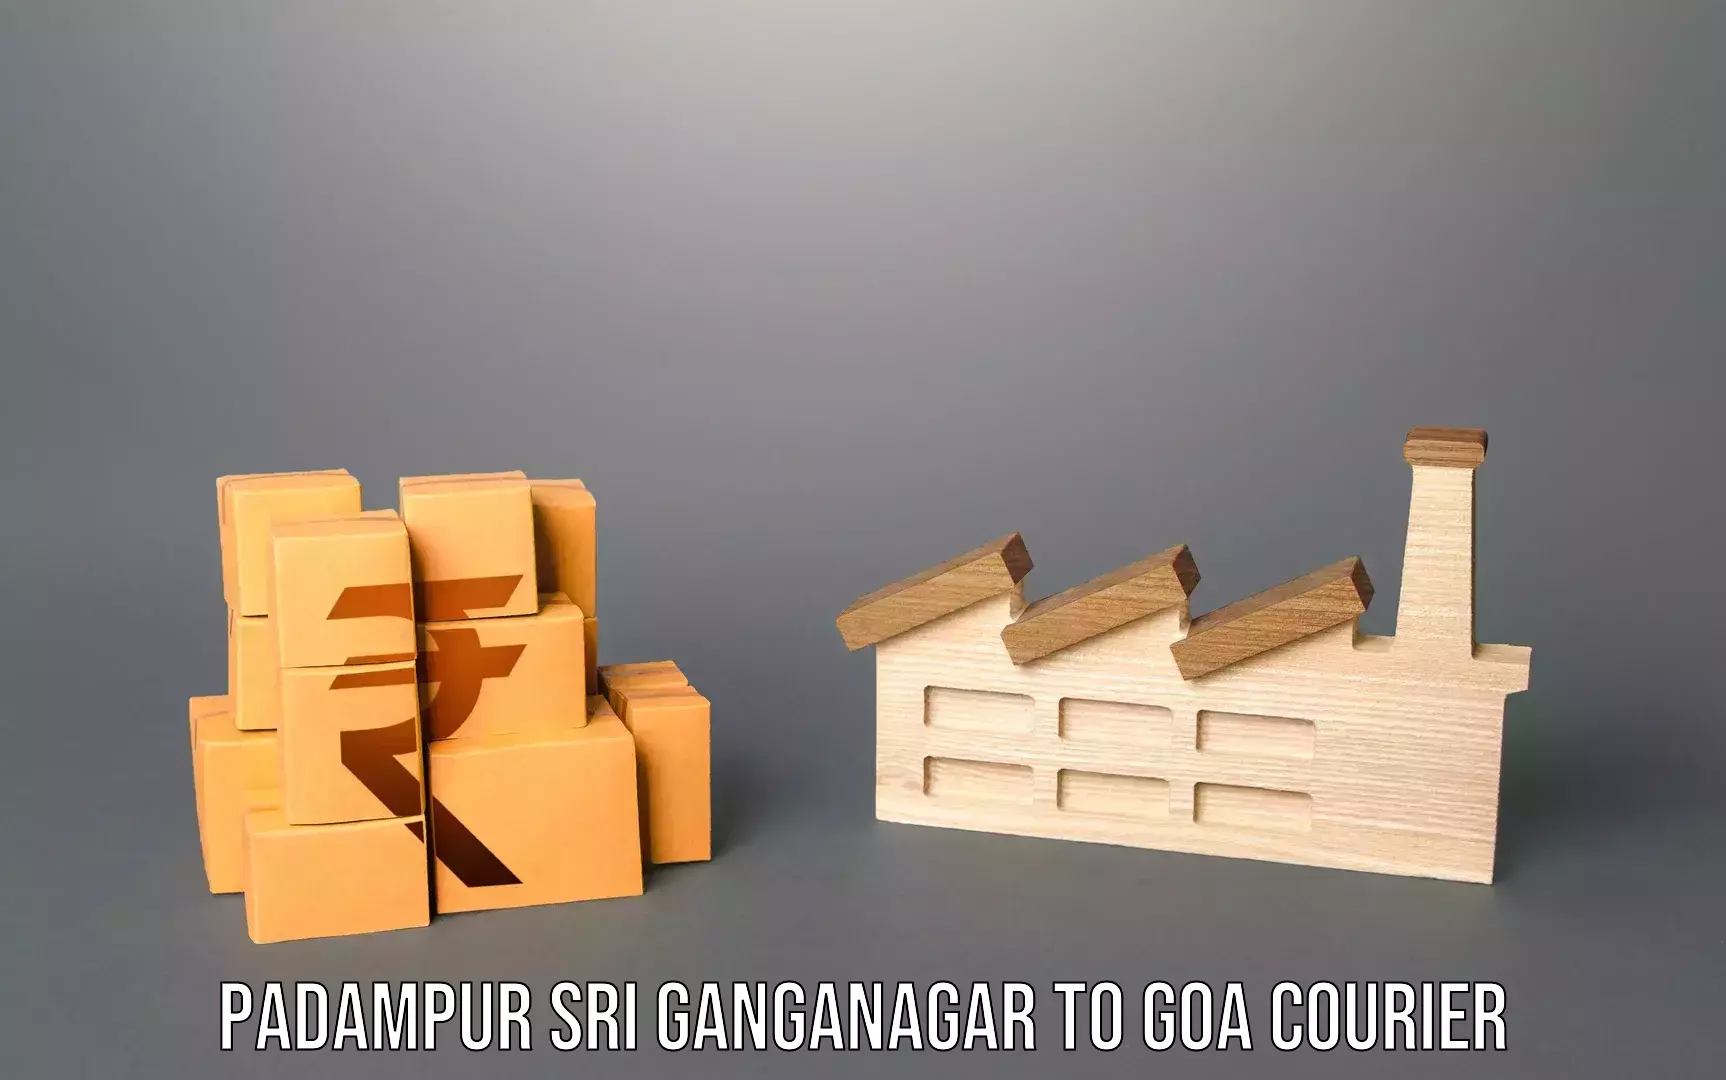 Same day baggage transport Padampur Sri Ganganagar to Goa